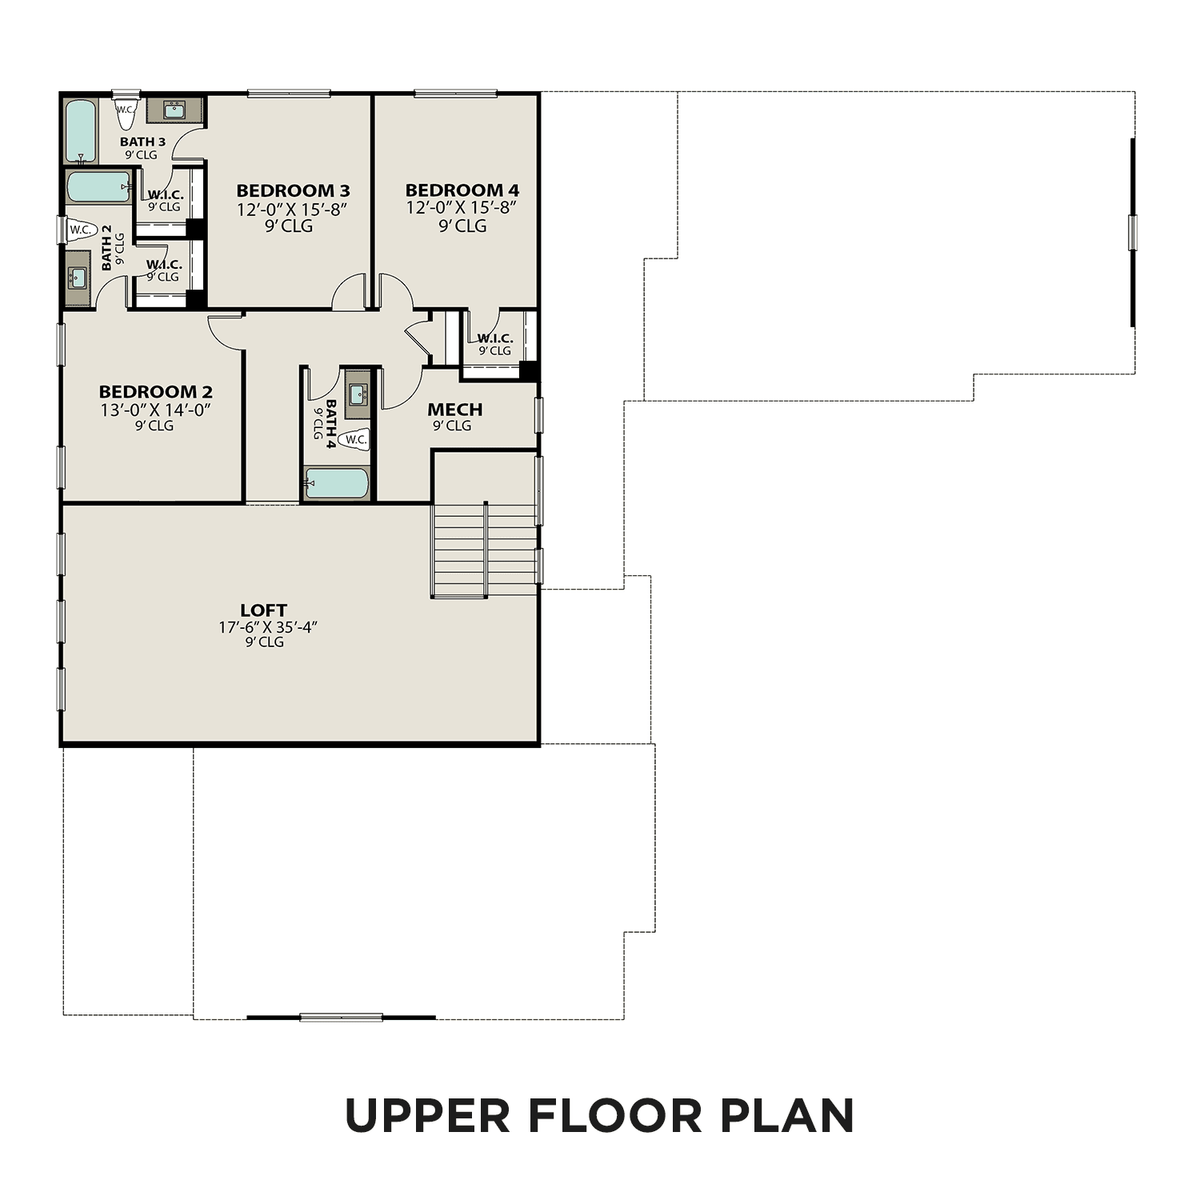 2 - The Bledsoe A floor plan layout for 5721 Eaglemont Dr in Davidson Homes' Shelton Square community.